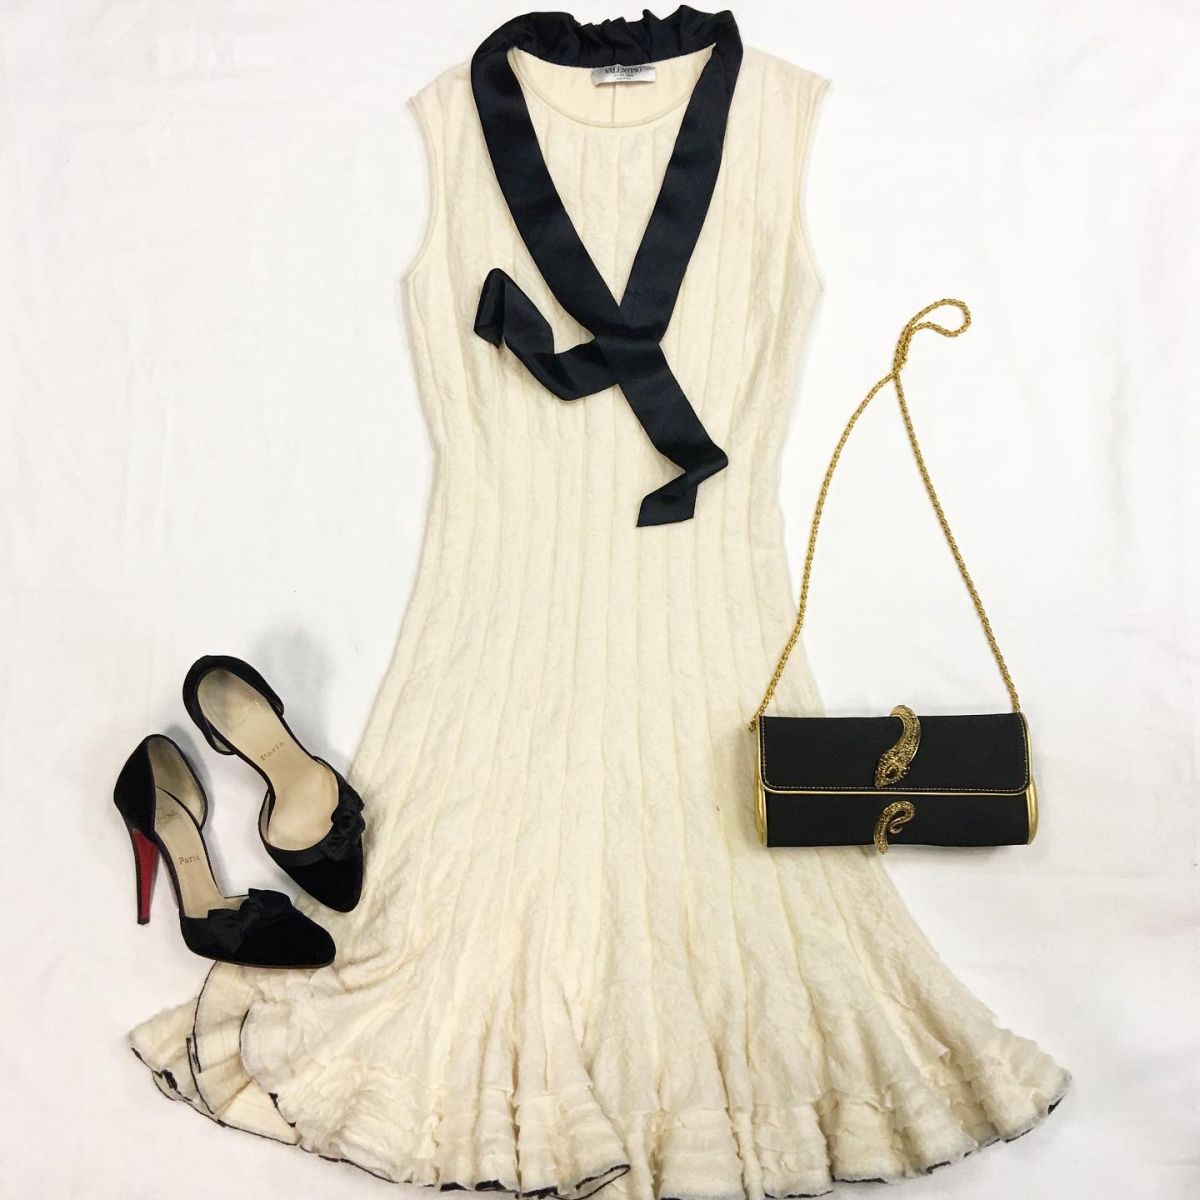 Платье Valentino размер 38 цена 23 078 руб Босоножки Louboutin  размер 40 цена 18 463 руб Сумка Roberto Cavalli 